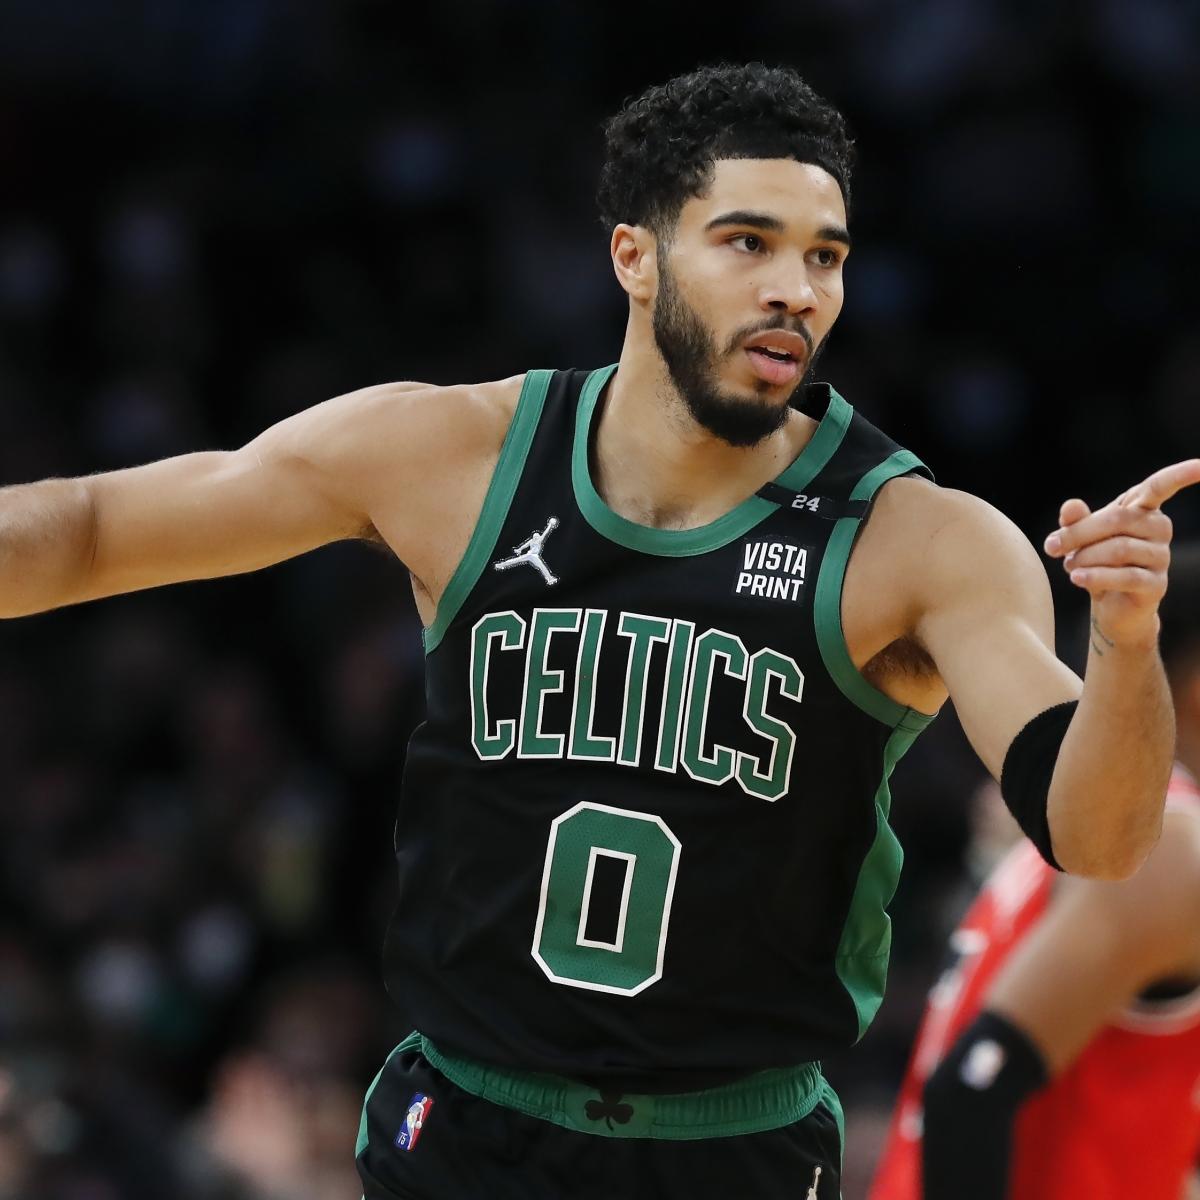 NBA 30 dias, 30 times: Boston Celtics muda de comando, mas não de patamar, nba